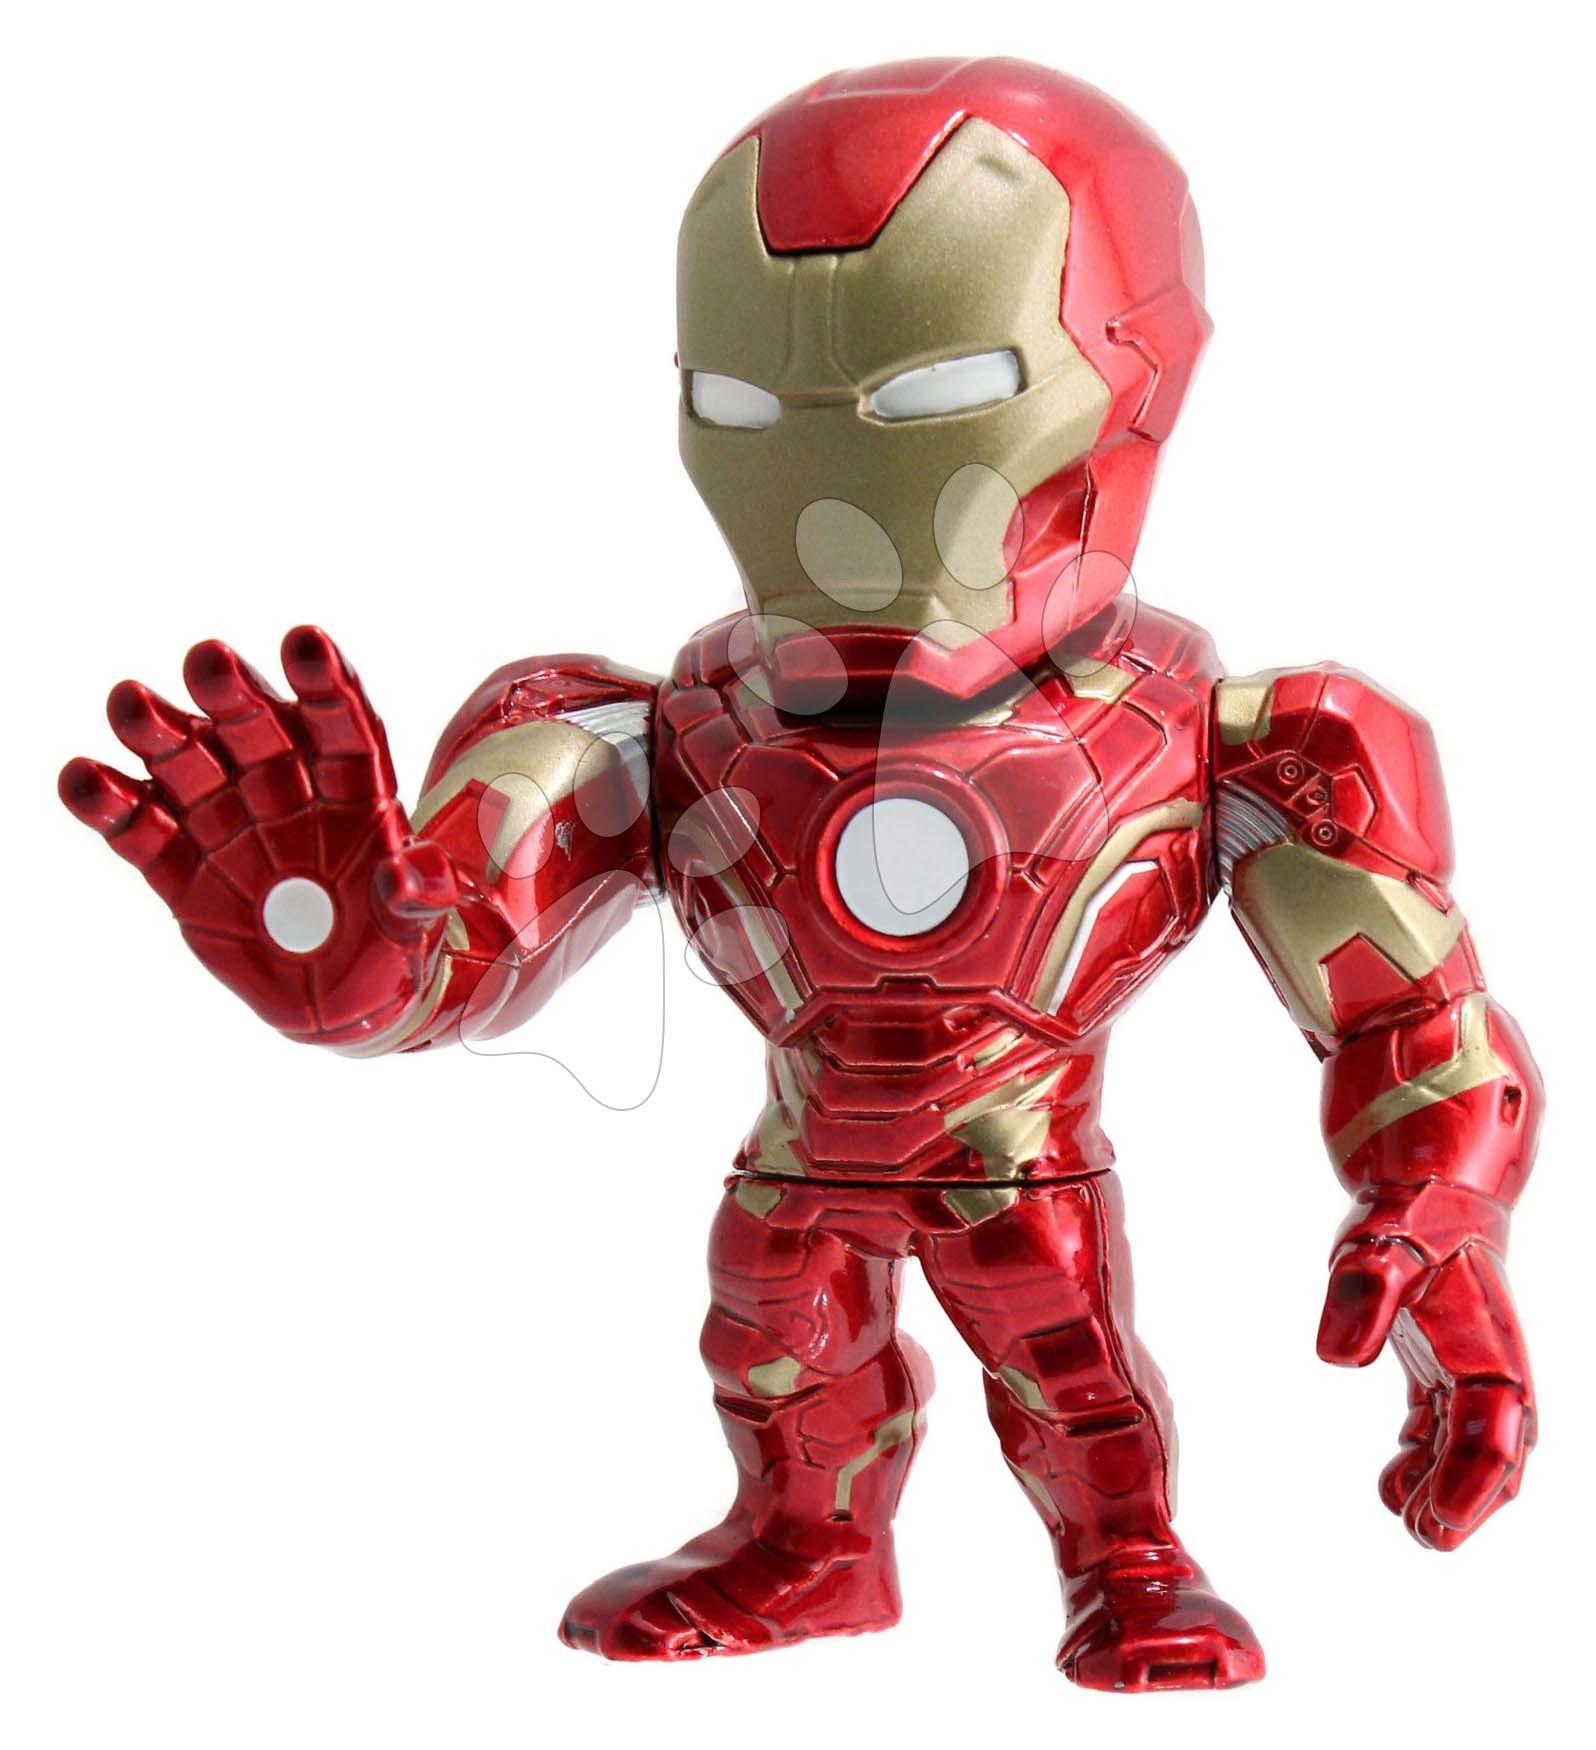 Figurka sběratelská Marvel Iron Man Jada kovová výška 10 cm